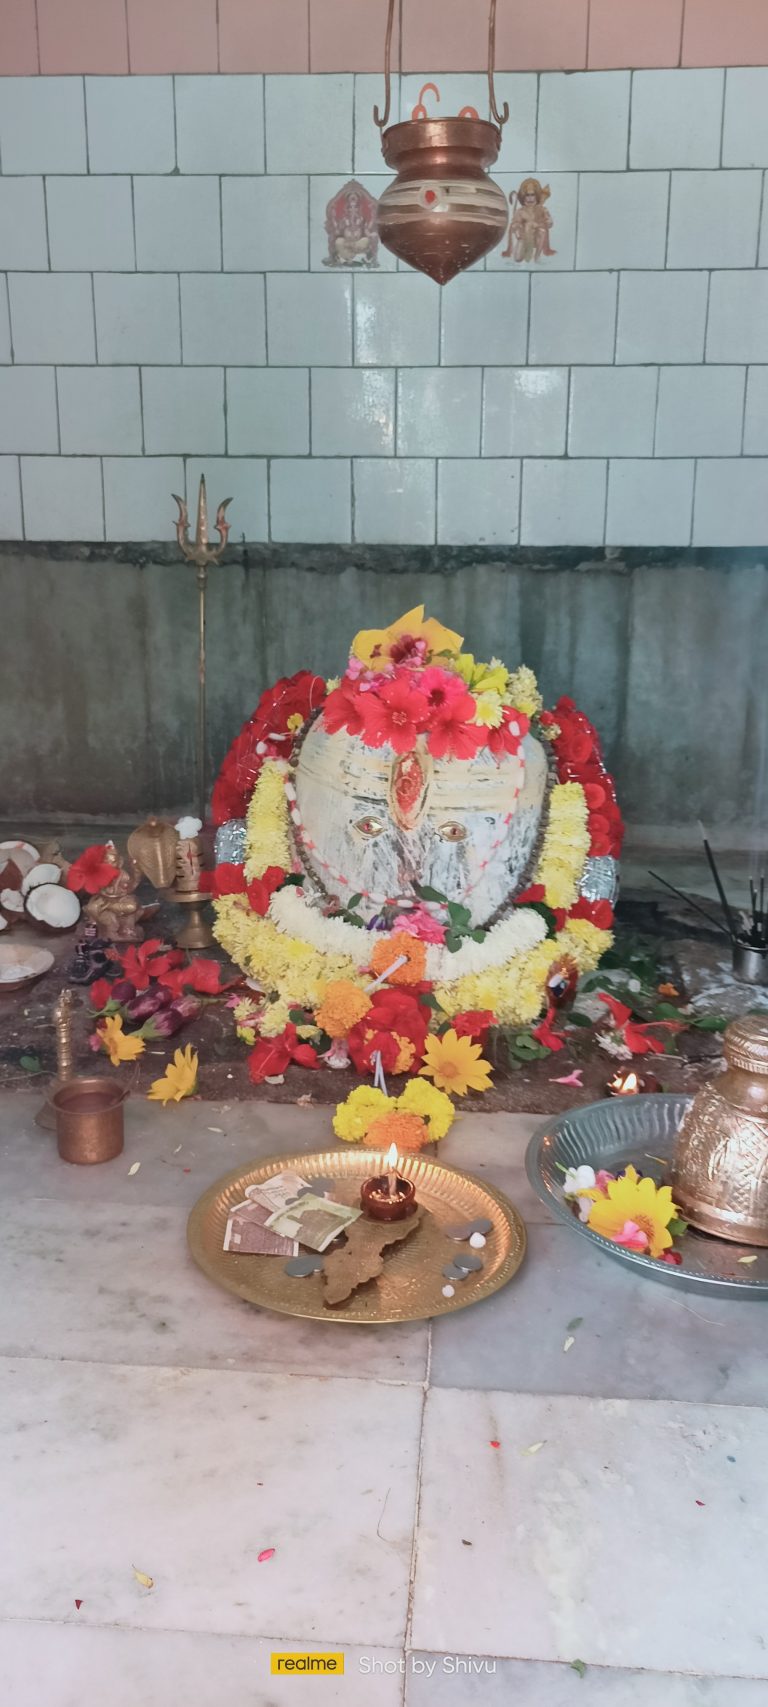 ಸೋಮವಾರ ಅಮಾವಾಸ್ಯೆ; ಸಿದ್ದಾಪುರದಲ್ಲಿ ಕಾಶಿ ವಿಶ್ವನಾಥನಿಗೆ ವಿಶೇಷ ಪೂಜೆ